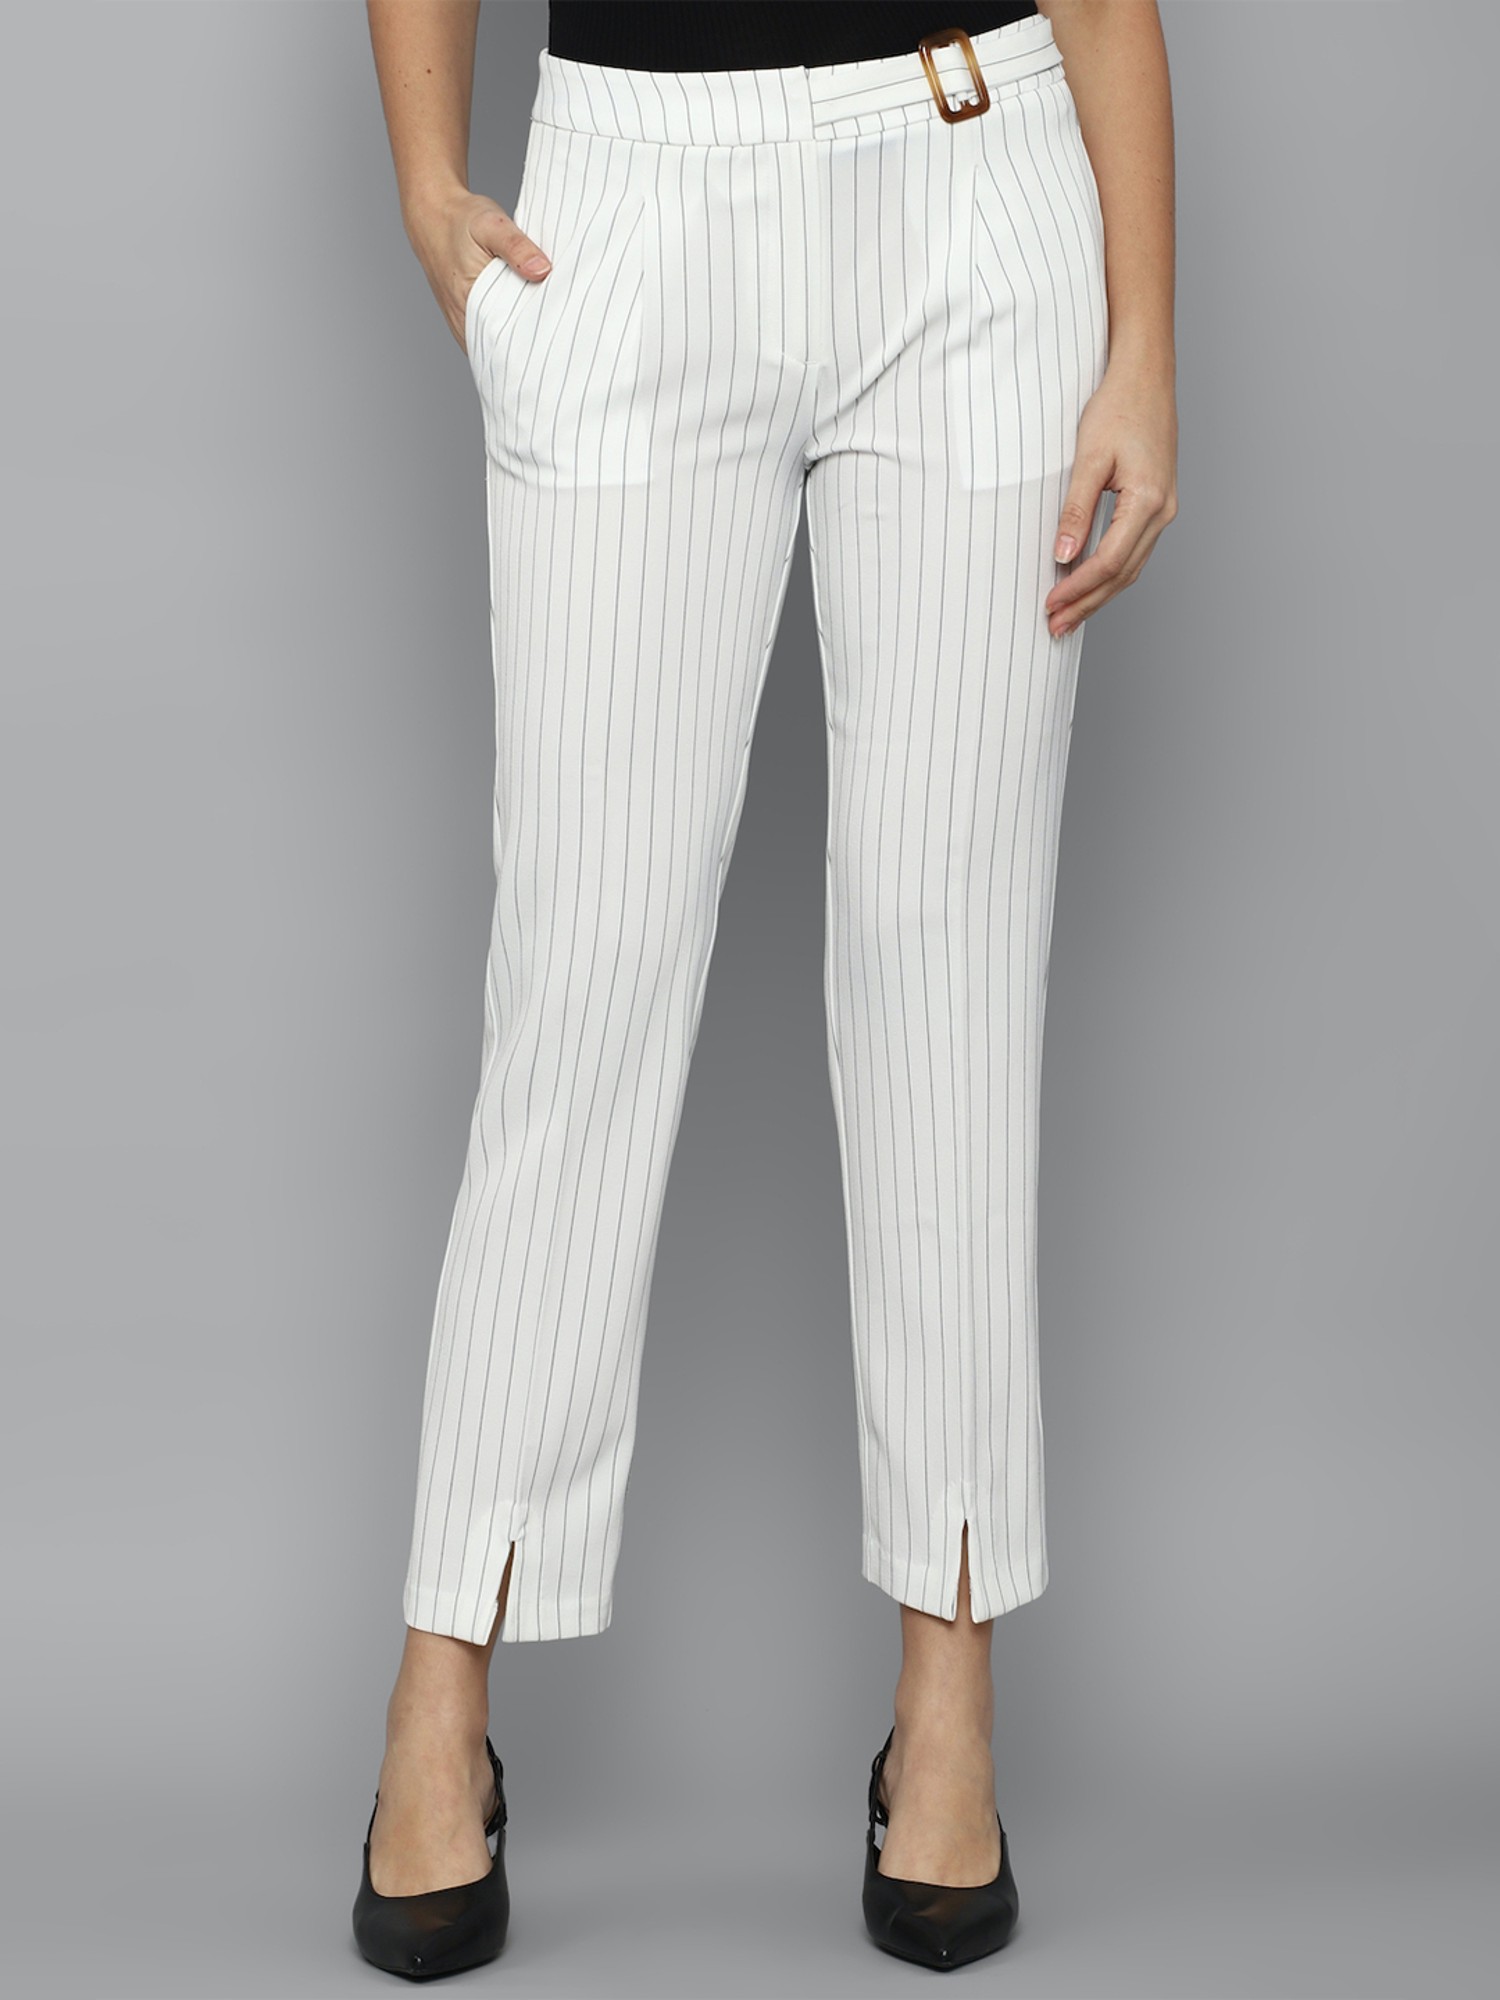 Buy Allen Solly Men White Regular Fit Self Design Regular Trousers   Trousers for Men 9141263  Myntra